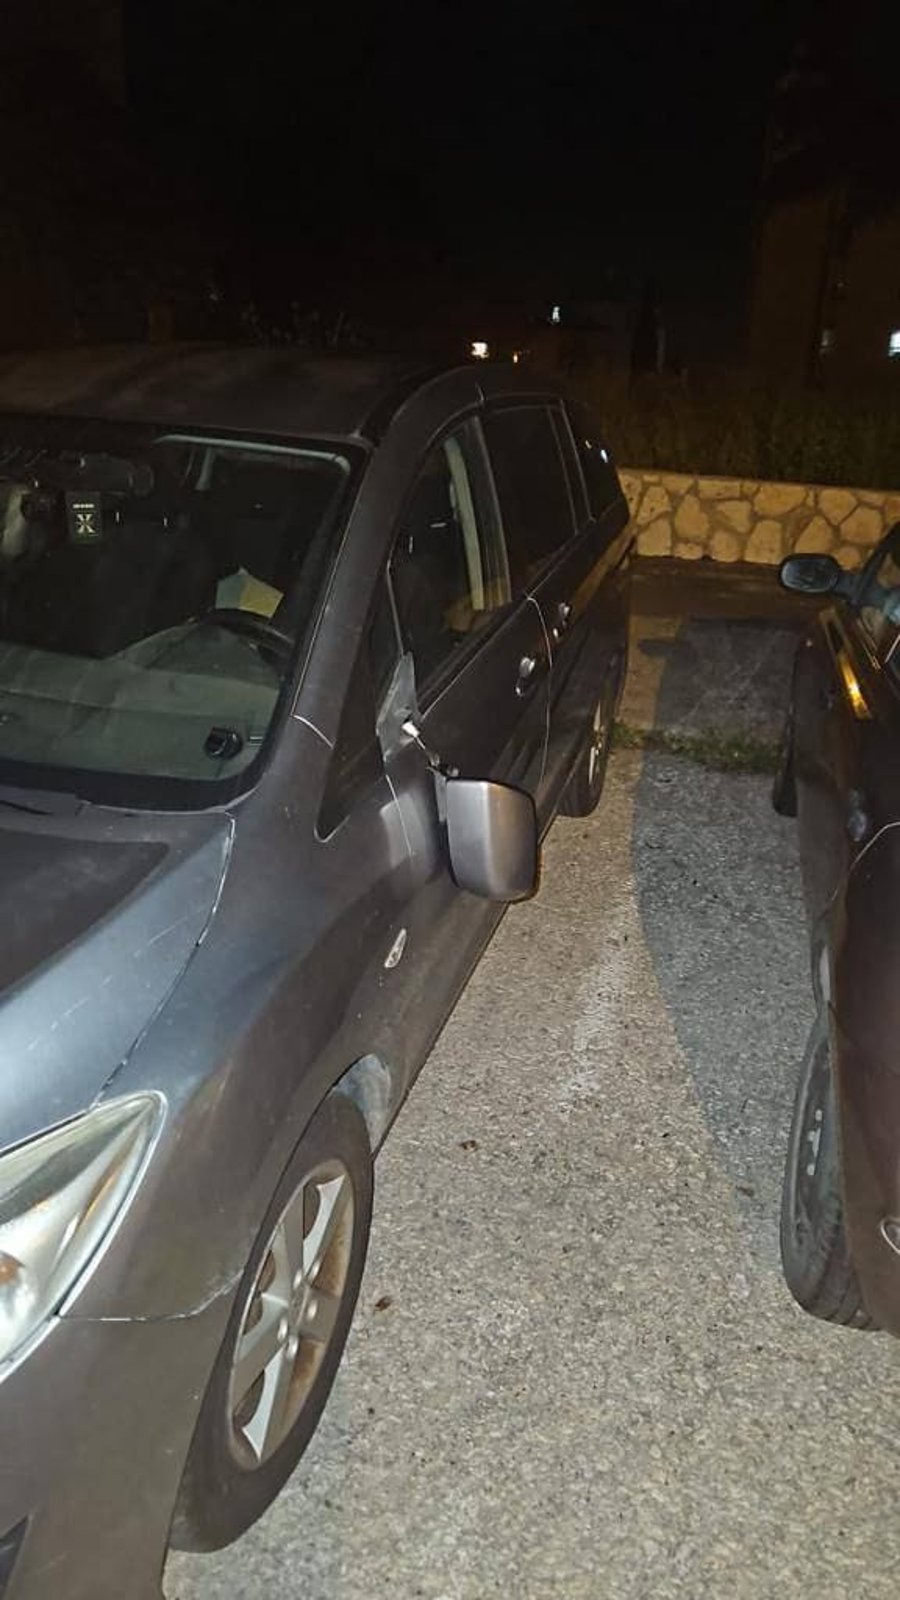 תושב מזרח ירושלים אחז חפץ חשוד, קרא 'אללה אכבר', הצית כלי רכב - ונורה בידי שוטרים